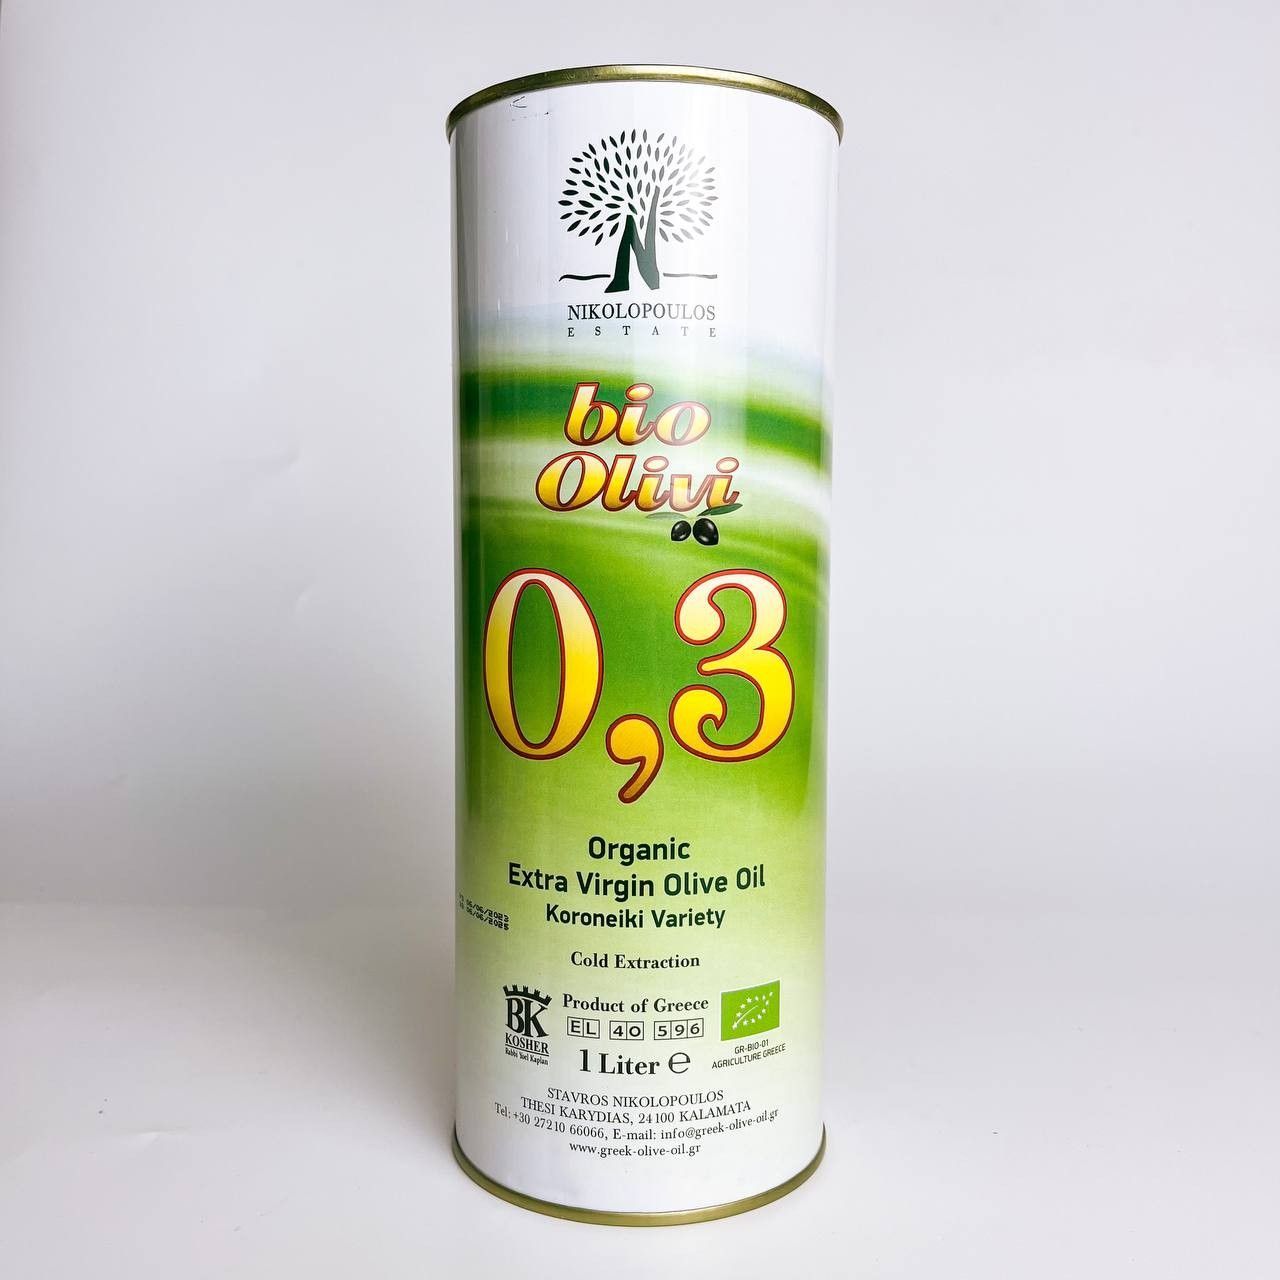 Оливковое масло Olivi Kalamata 0,3, 1 л